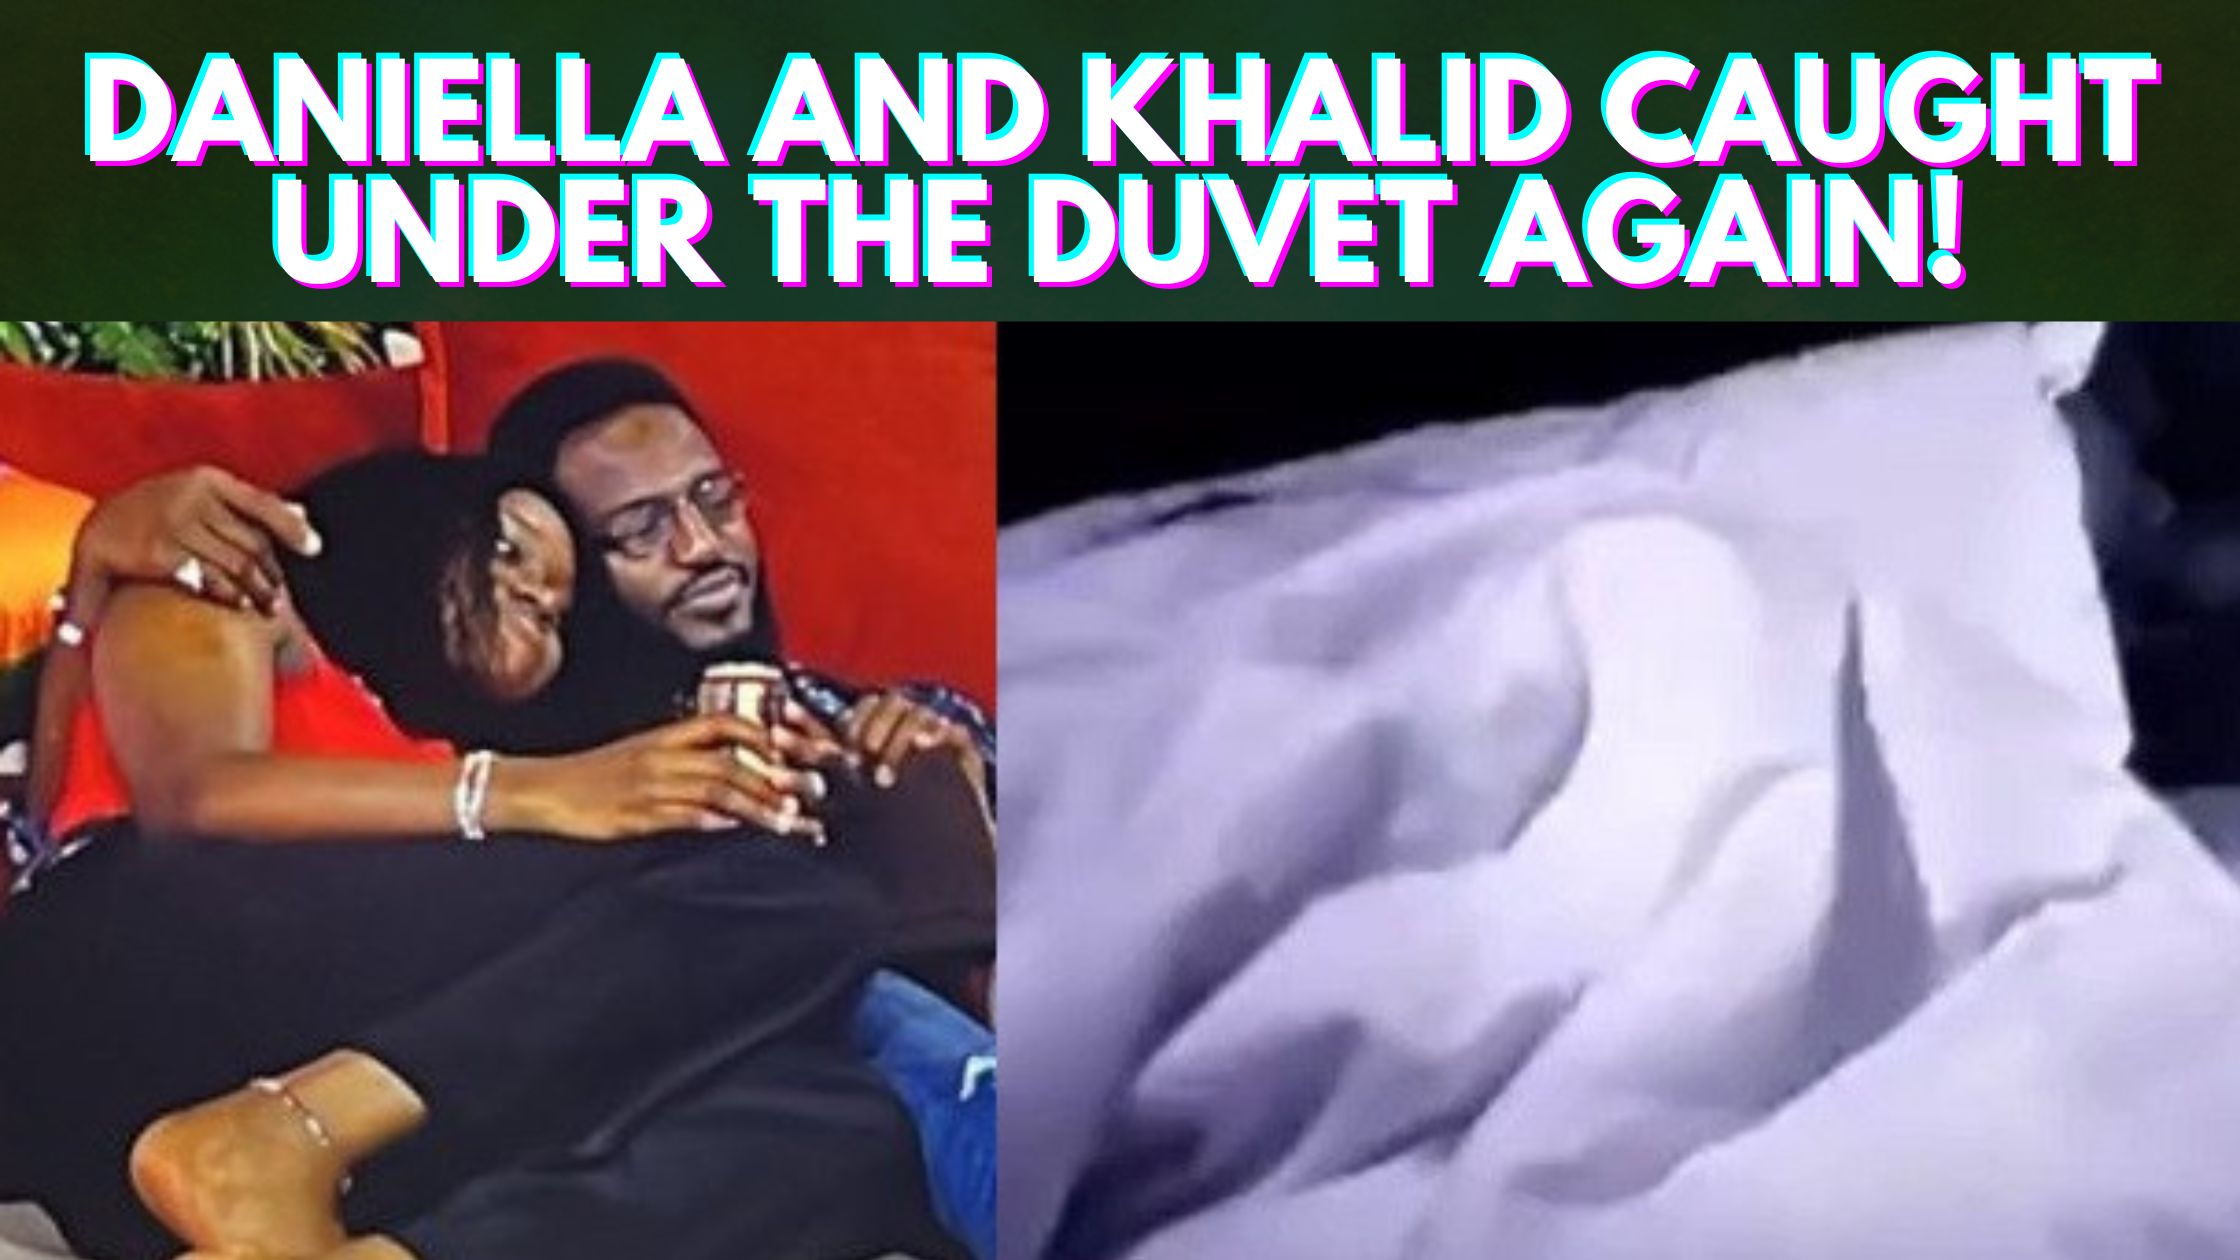 Daniella And Khalid Caught Under The Duvet Again!